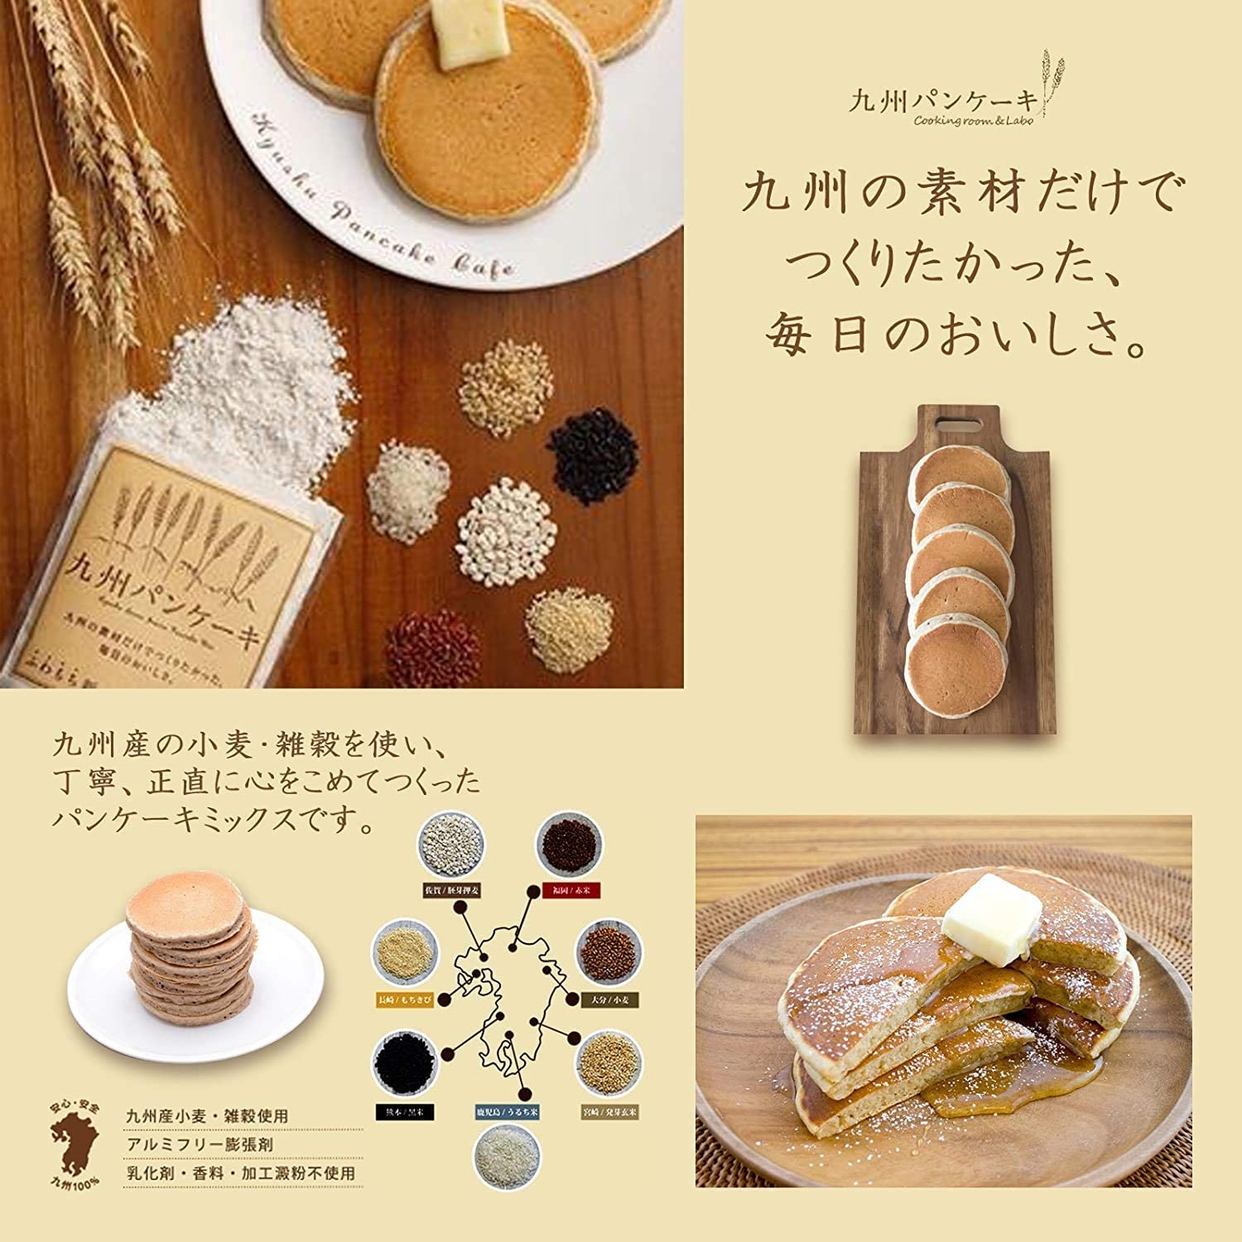 九州テーブル 九州パンケーキの商品画像2 